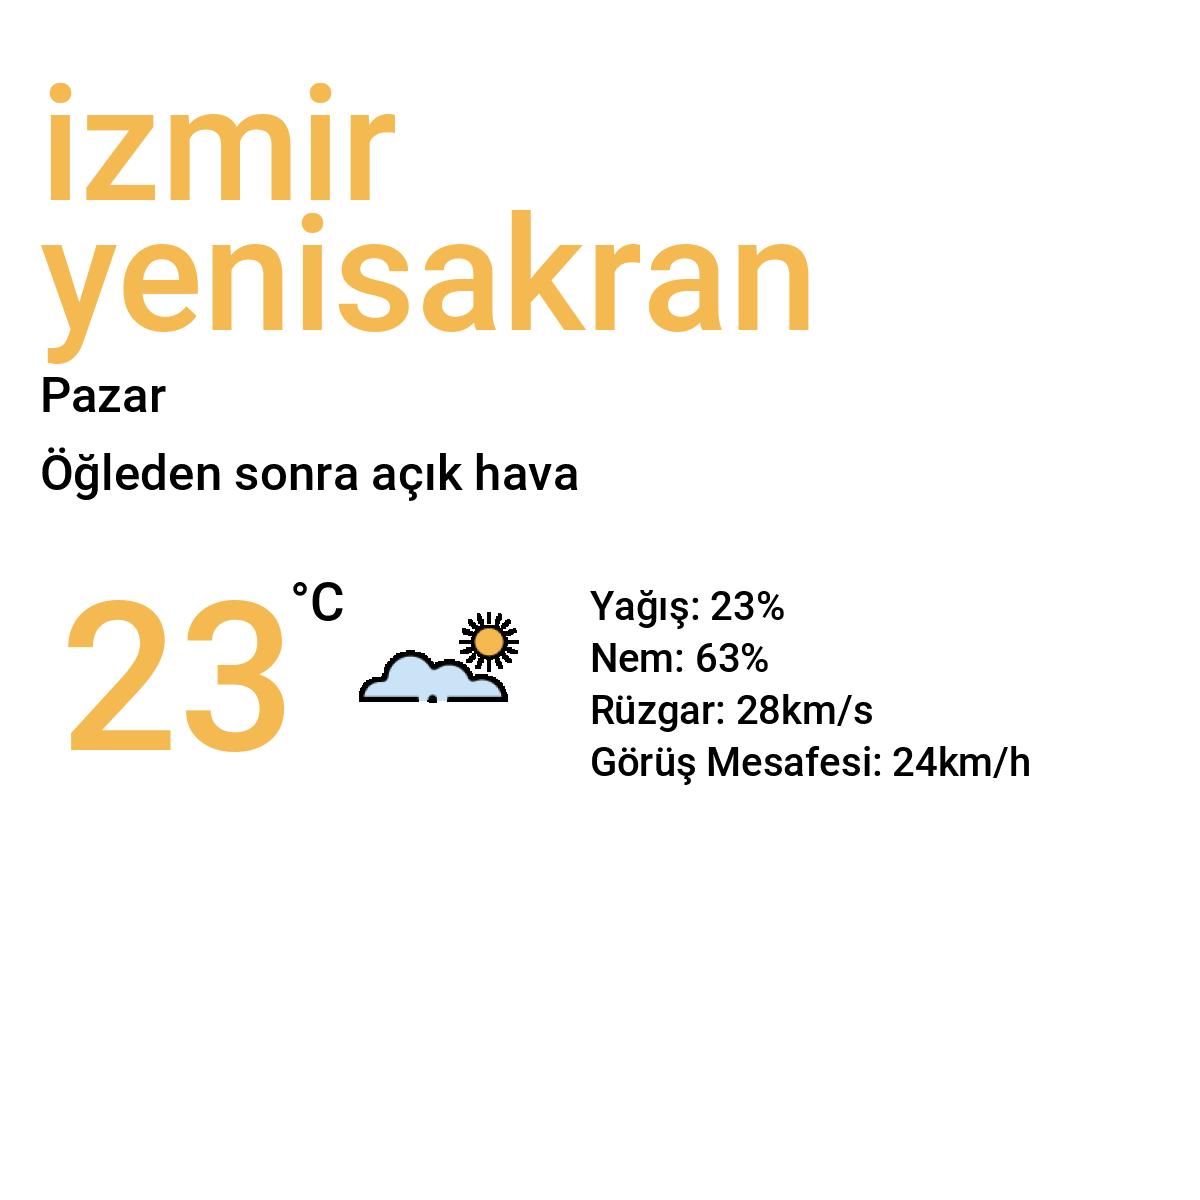 İzmir Yenişakran Yarınki Hava Durumu Tahmini